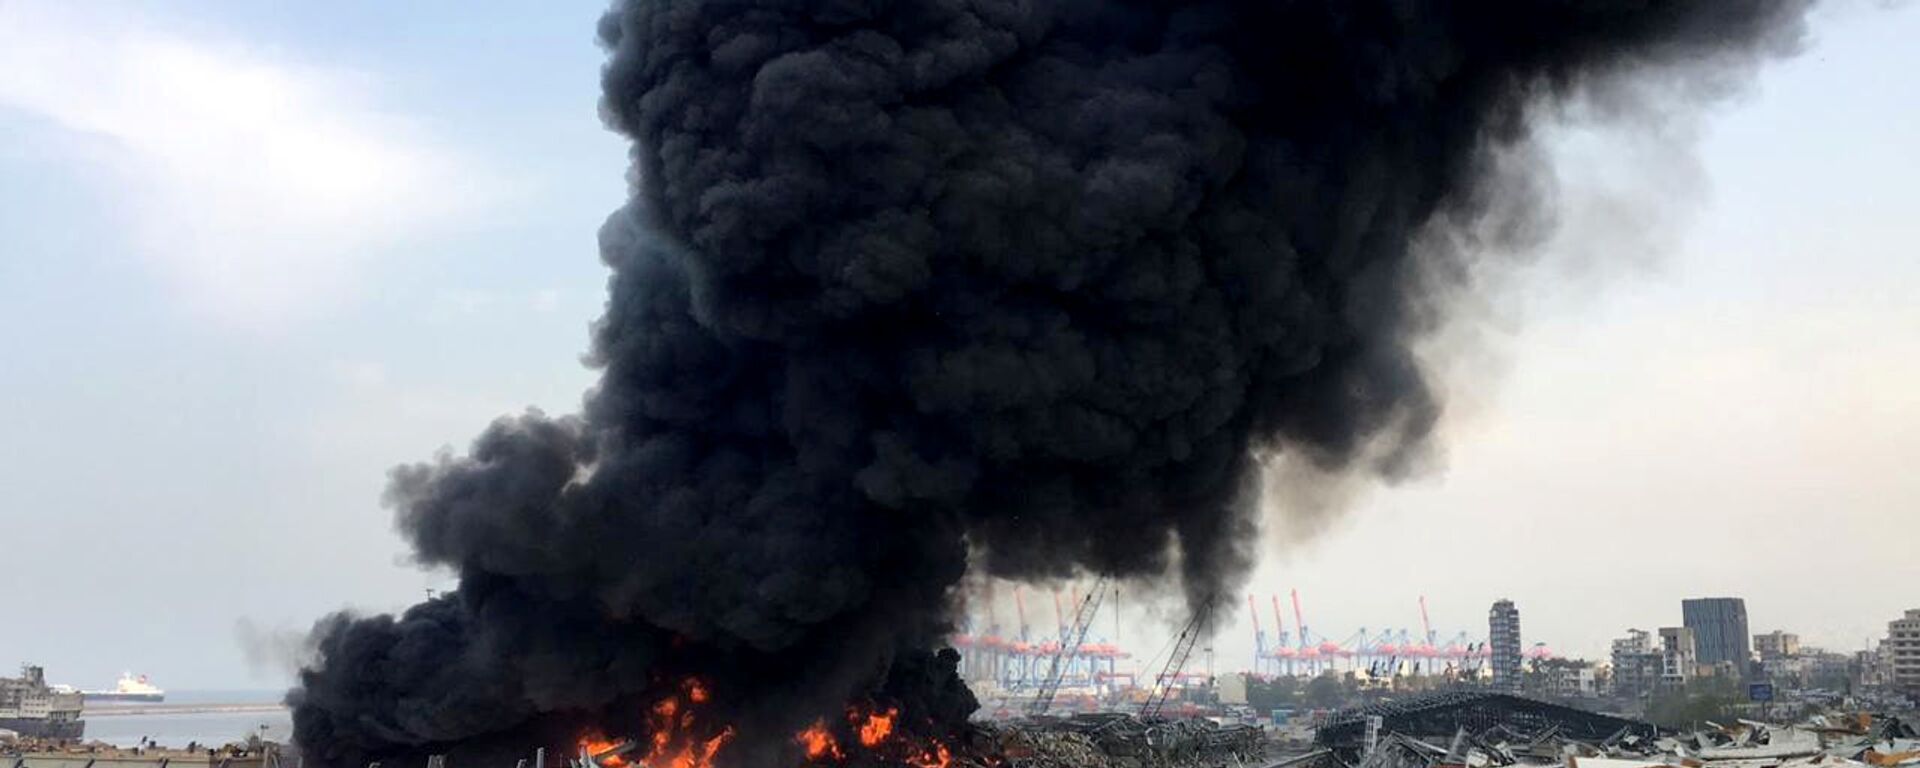 Lübnan'ın başkentinde, Beyrut Limanı'nda yangın, 10 Eylül 2020 - Sputnik Türkiye, 1920, 02.07.2021